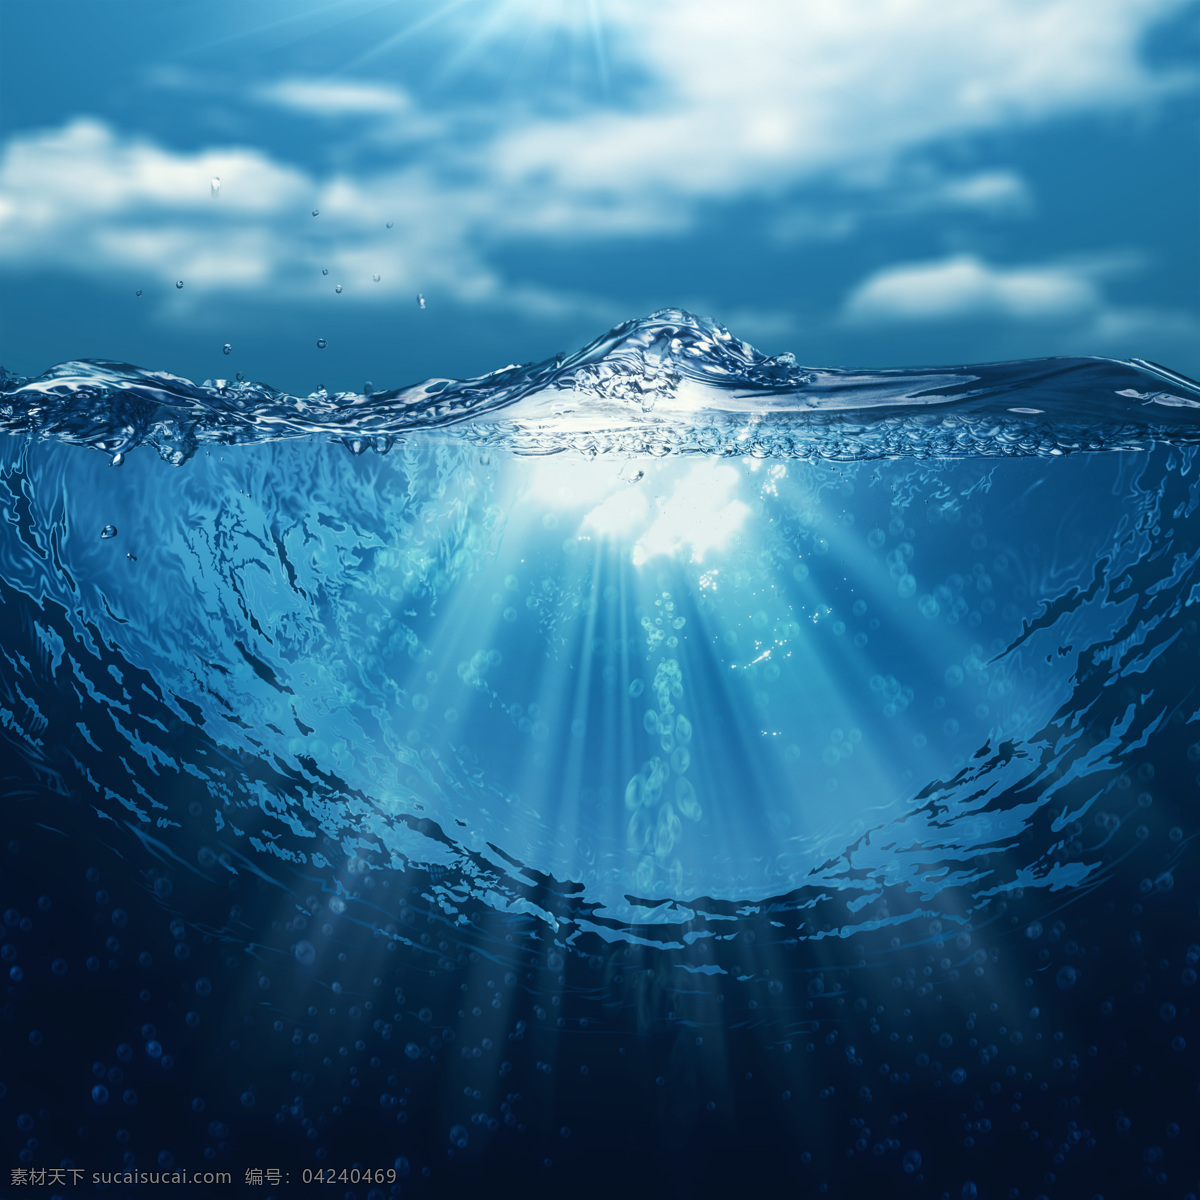 蓝色 海底 海面 深海海底 海面水纹 阳光照射 波纹 水浪 水 水纹 水波 水花 水背景 水主题 水元素 火焰图片 生活百科